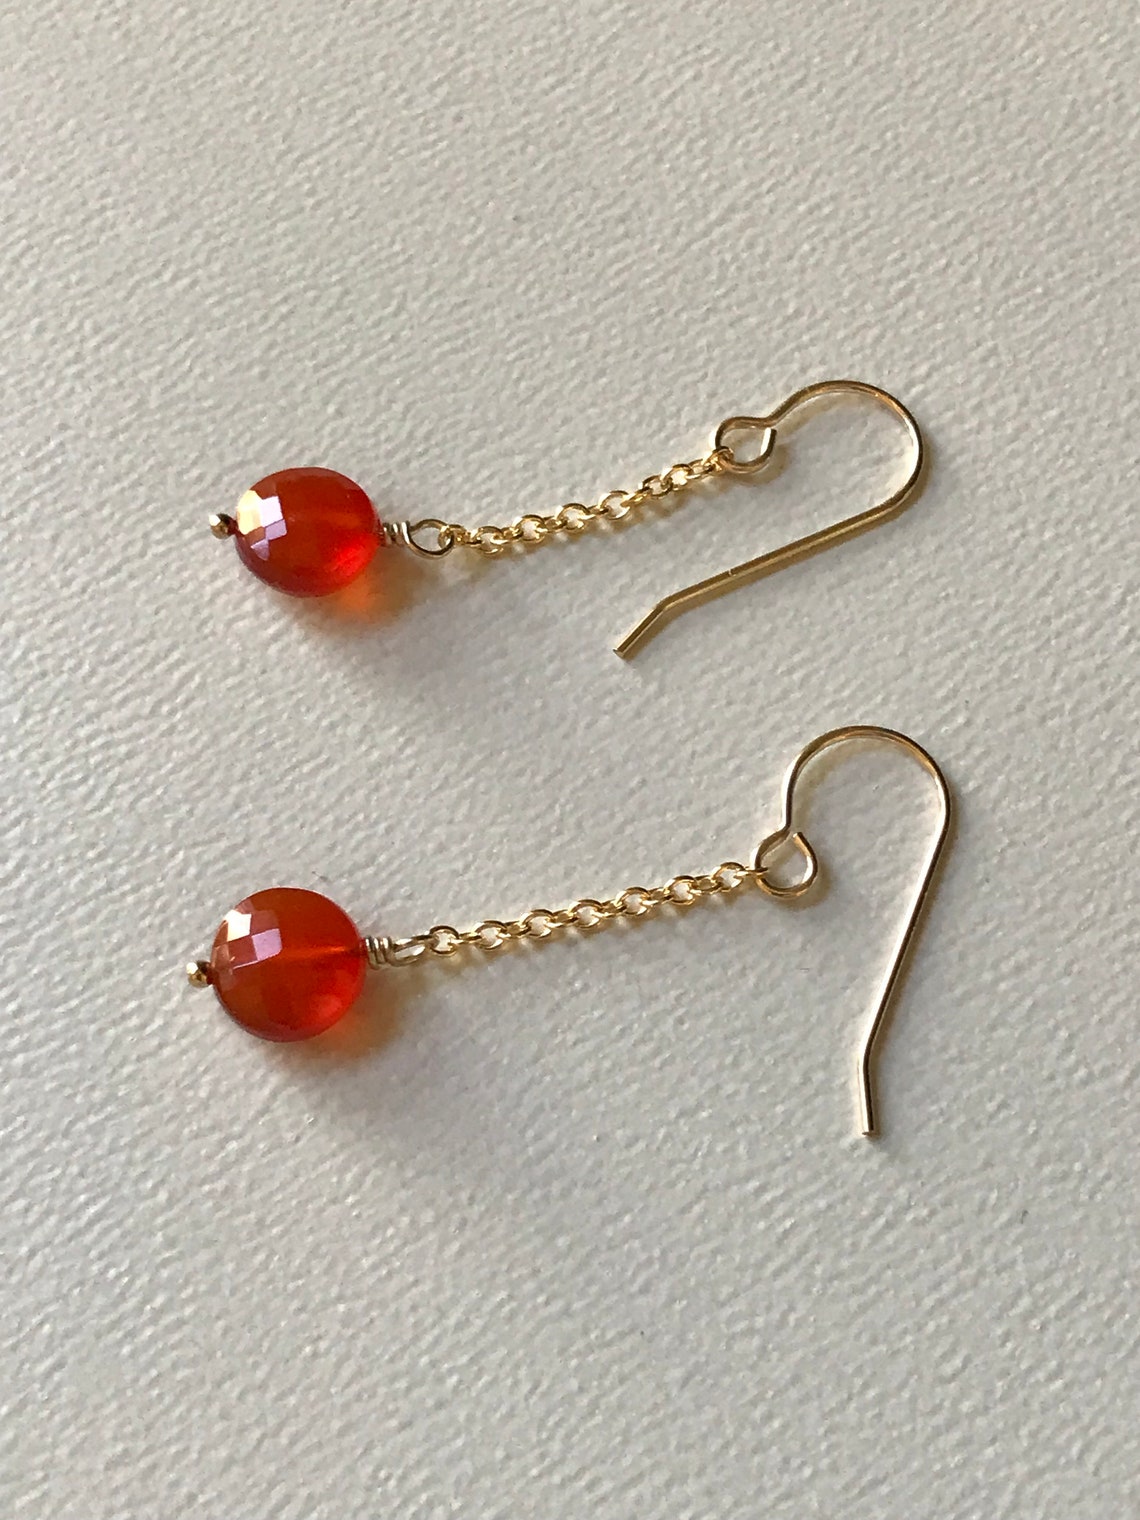 Red Carnelian Earrings 14k Gold Filled Statement Earrings - Etsy UK